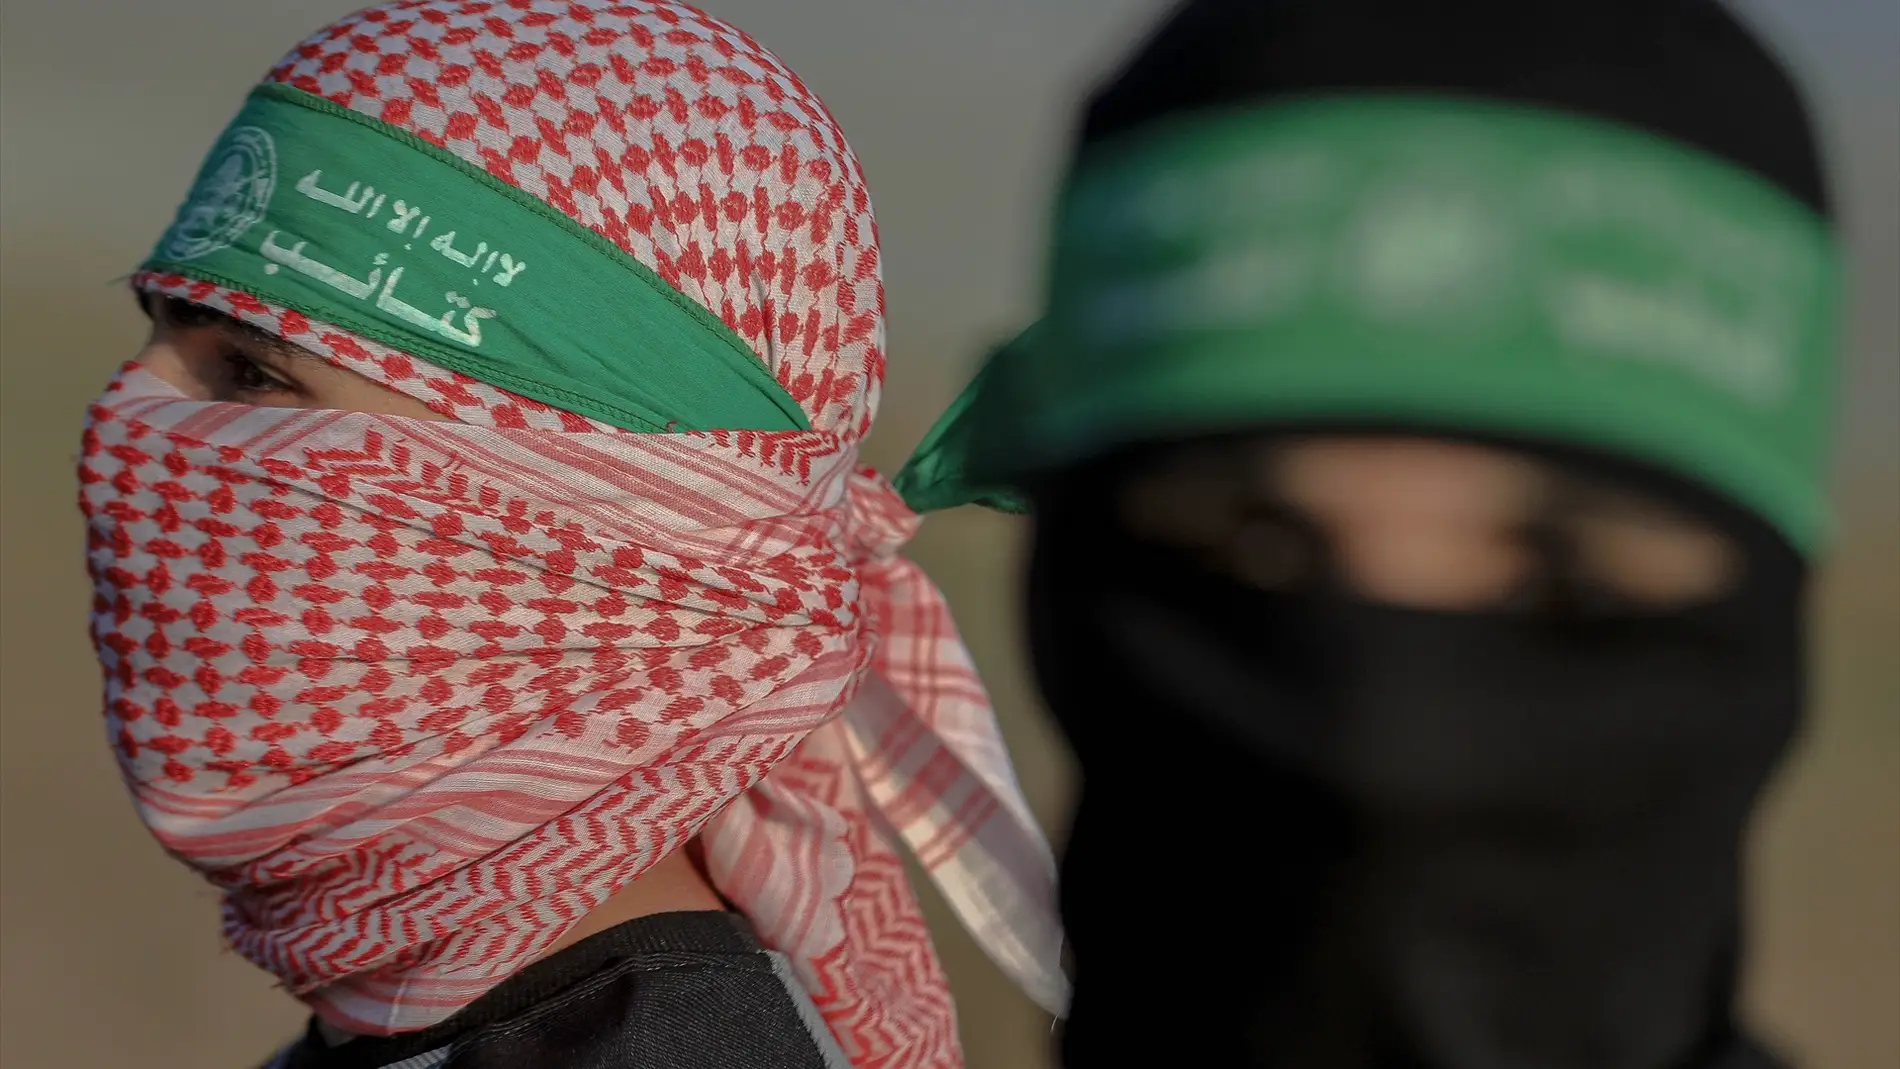 Seis claves para entender de dónde viene Hamás: ideología, qué busca, sus  métodos... | Onda Cero Radio